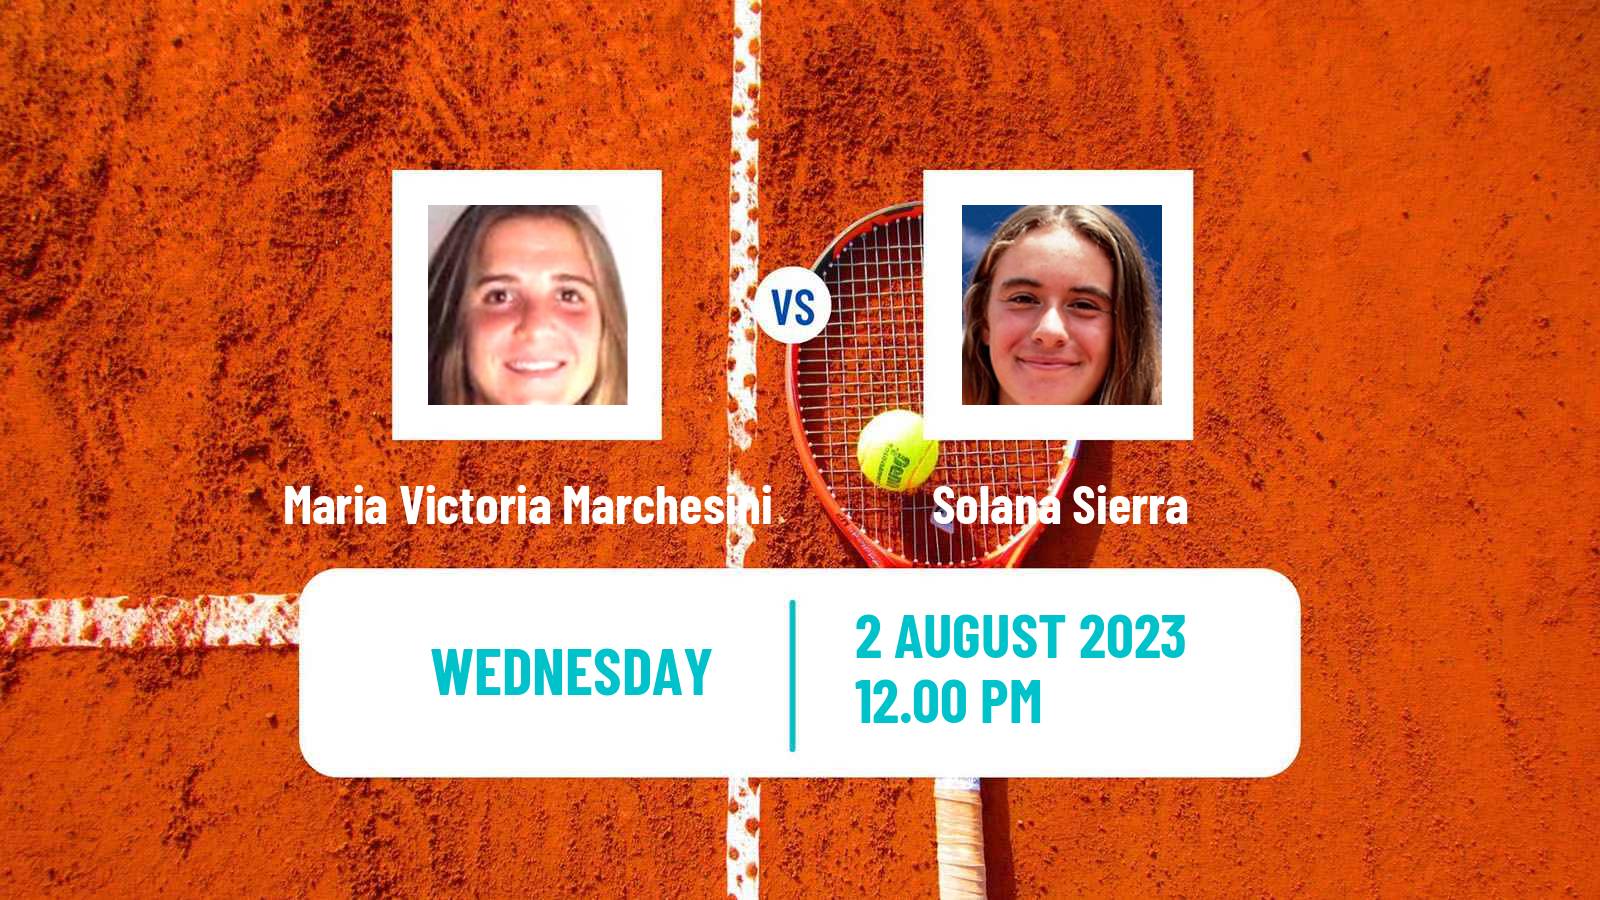 Tennis ITF W25 Junin Women Maria Victoria Marchesini - Solana Sierra